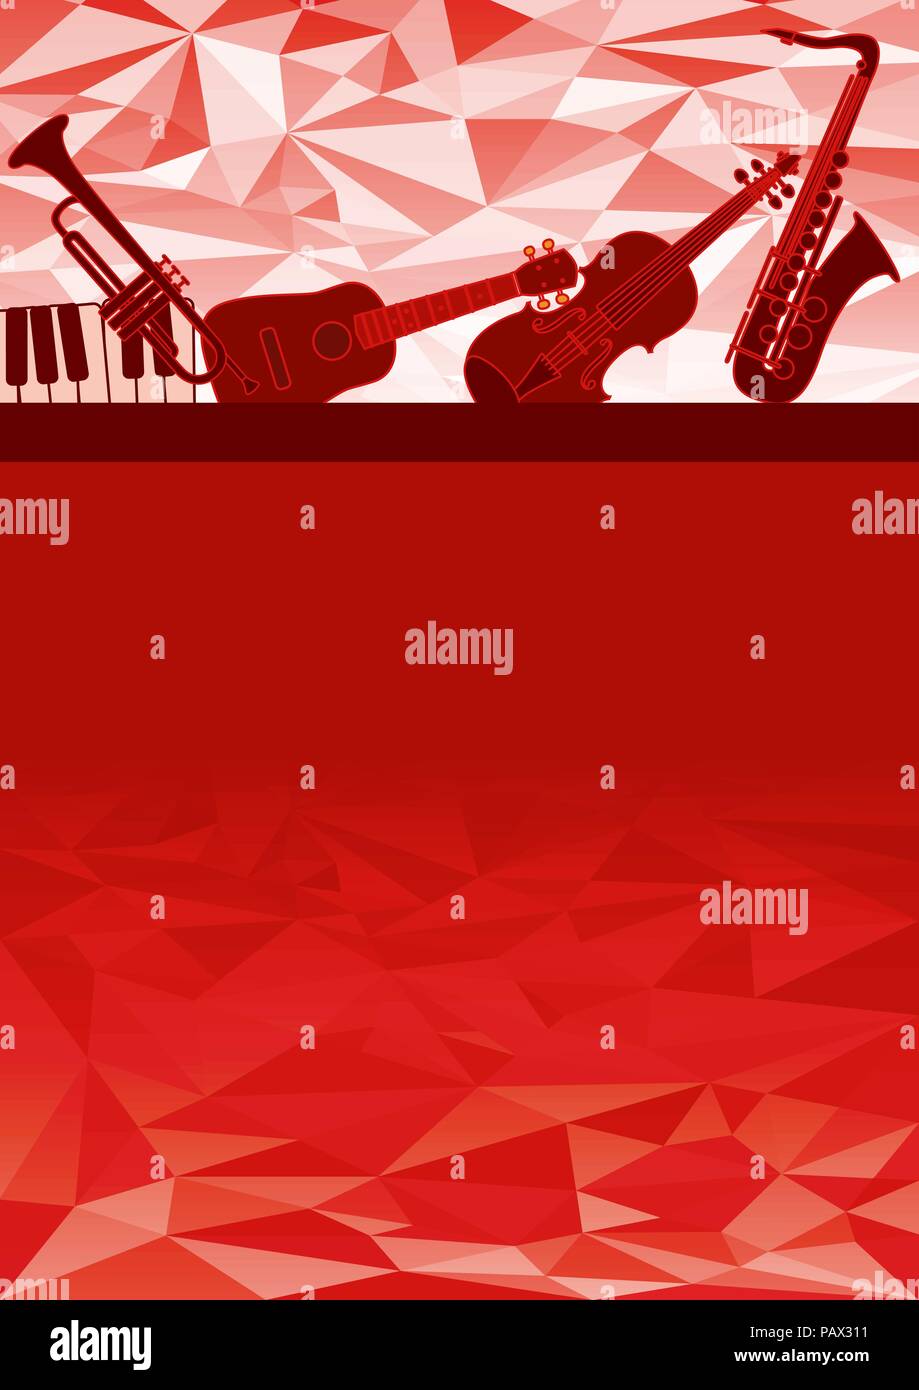 Strumenti musicali carta regalo Immagine e Vettoriale - Alamy